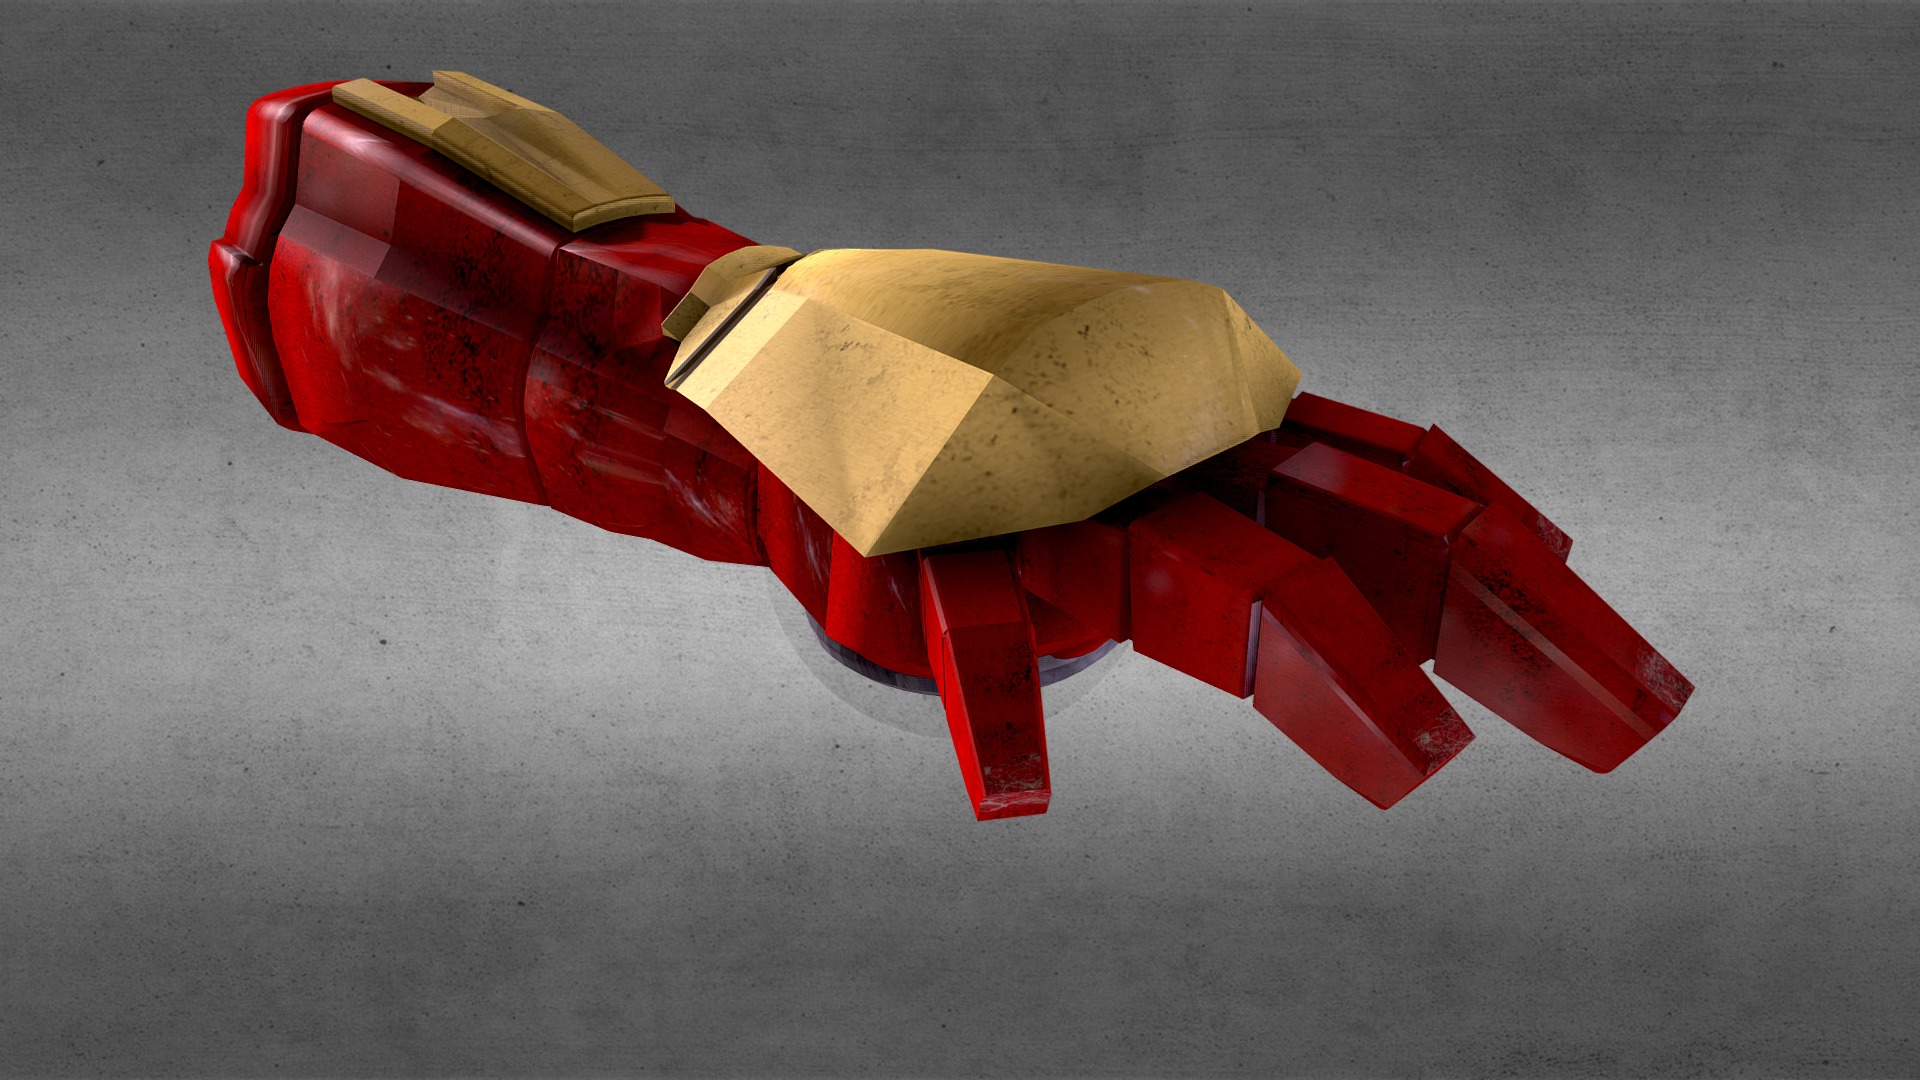 Ironman Hand Blaster Mark 1 model by Johnny Rumeliotis [3Dbfa0e]